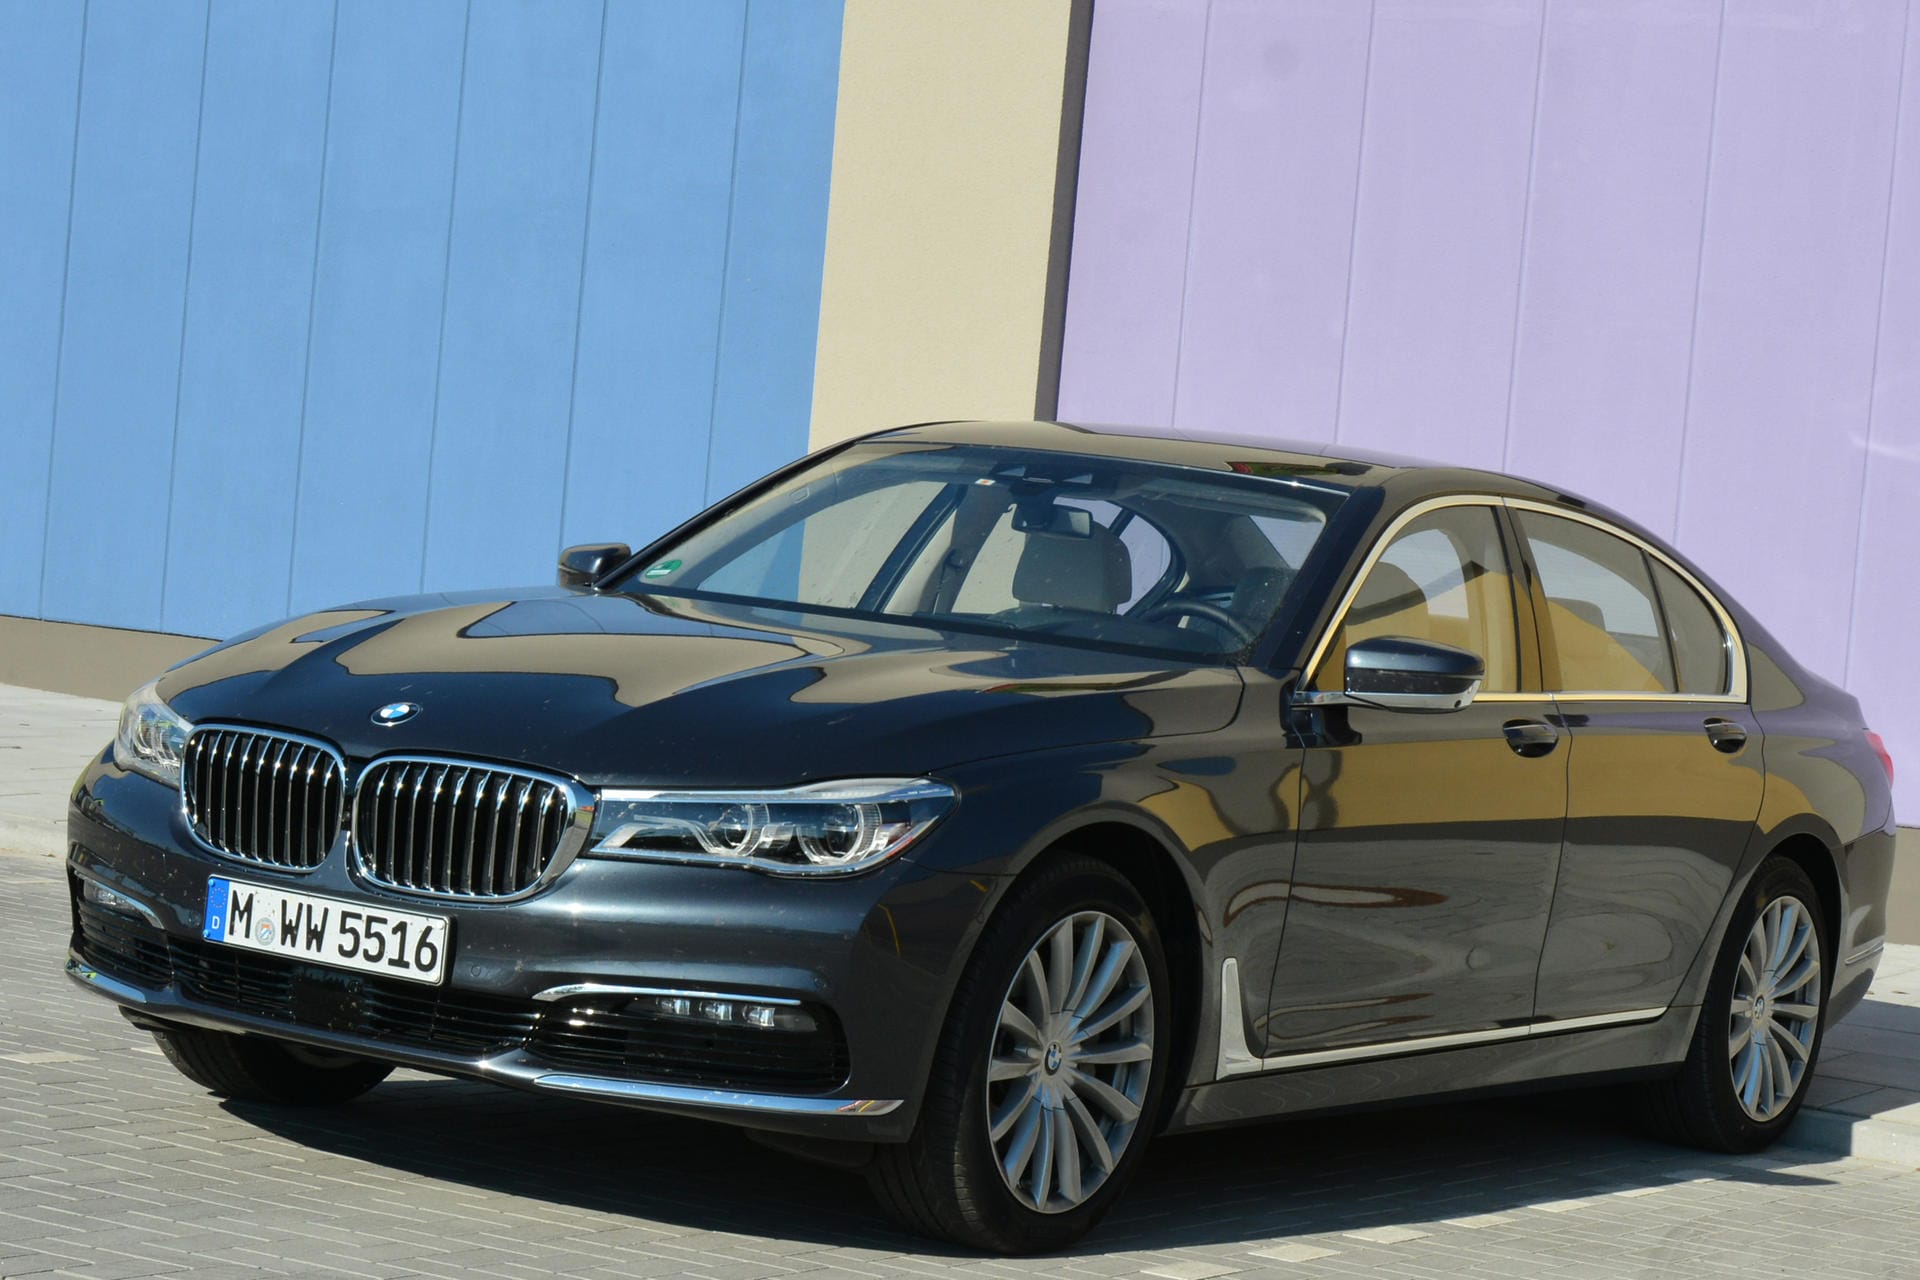 Ab 88.300 Euro ist der BMW 740i zu haben. Mit einigen Extras ist aber ganz schnell die 100.000-Euro-Grenze geknackt.